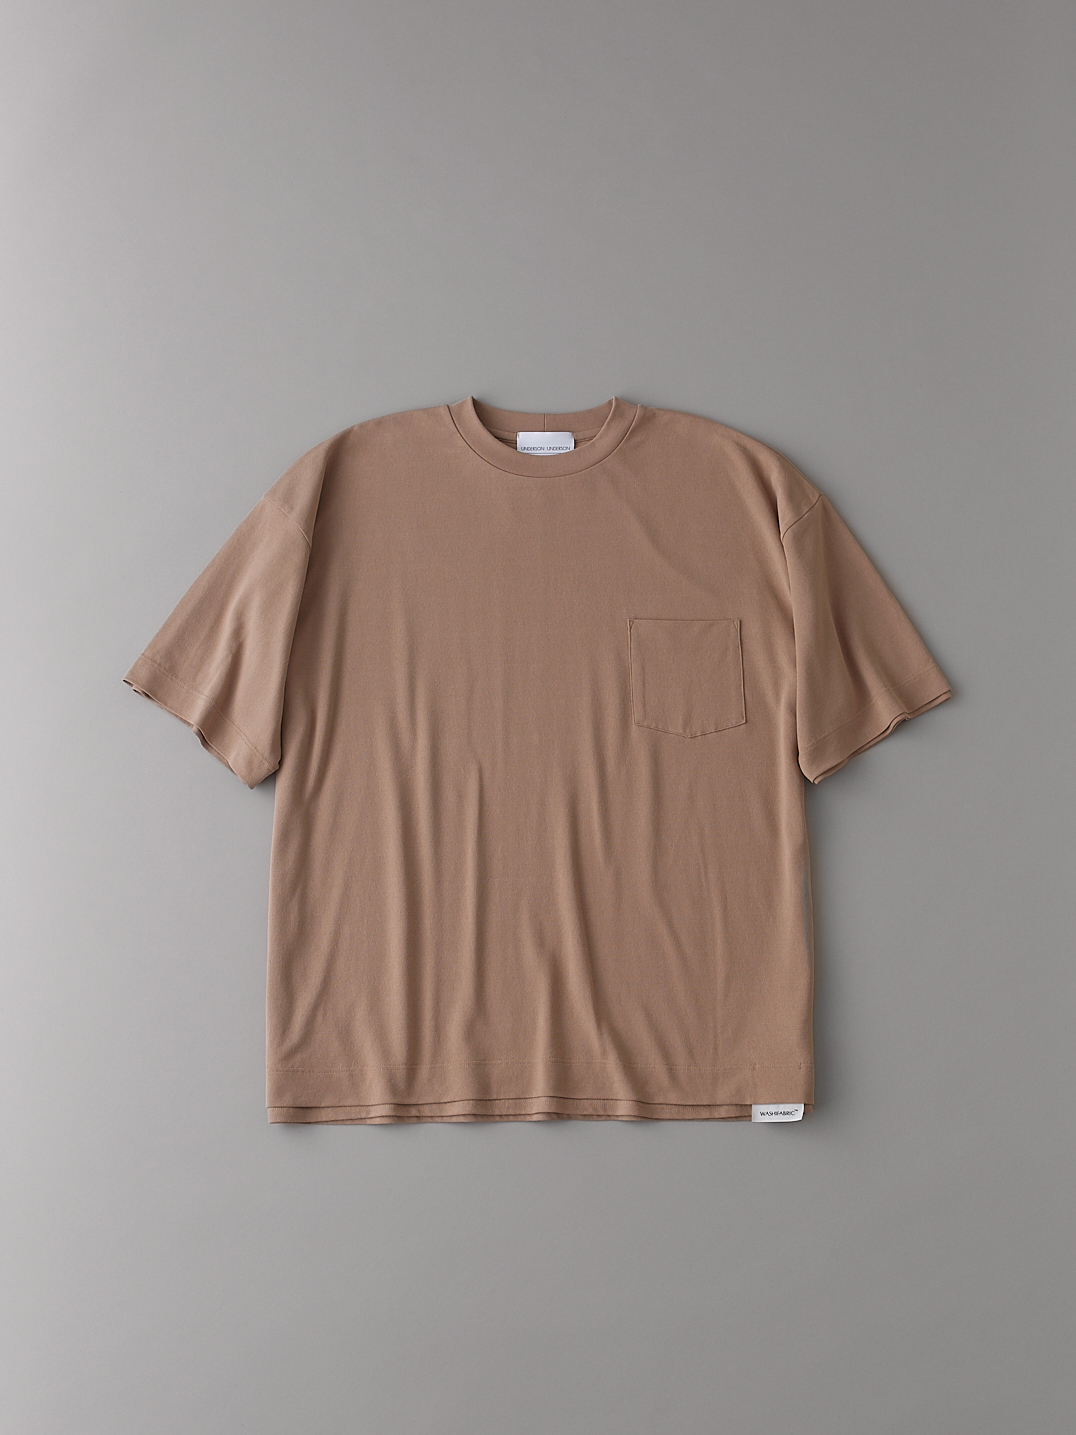 オールダブルTシャツ【メンズ】(PBEG-1)